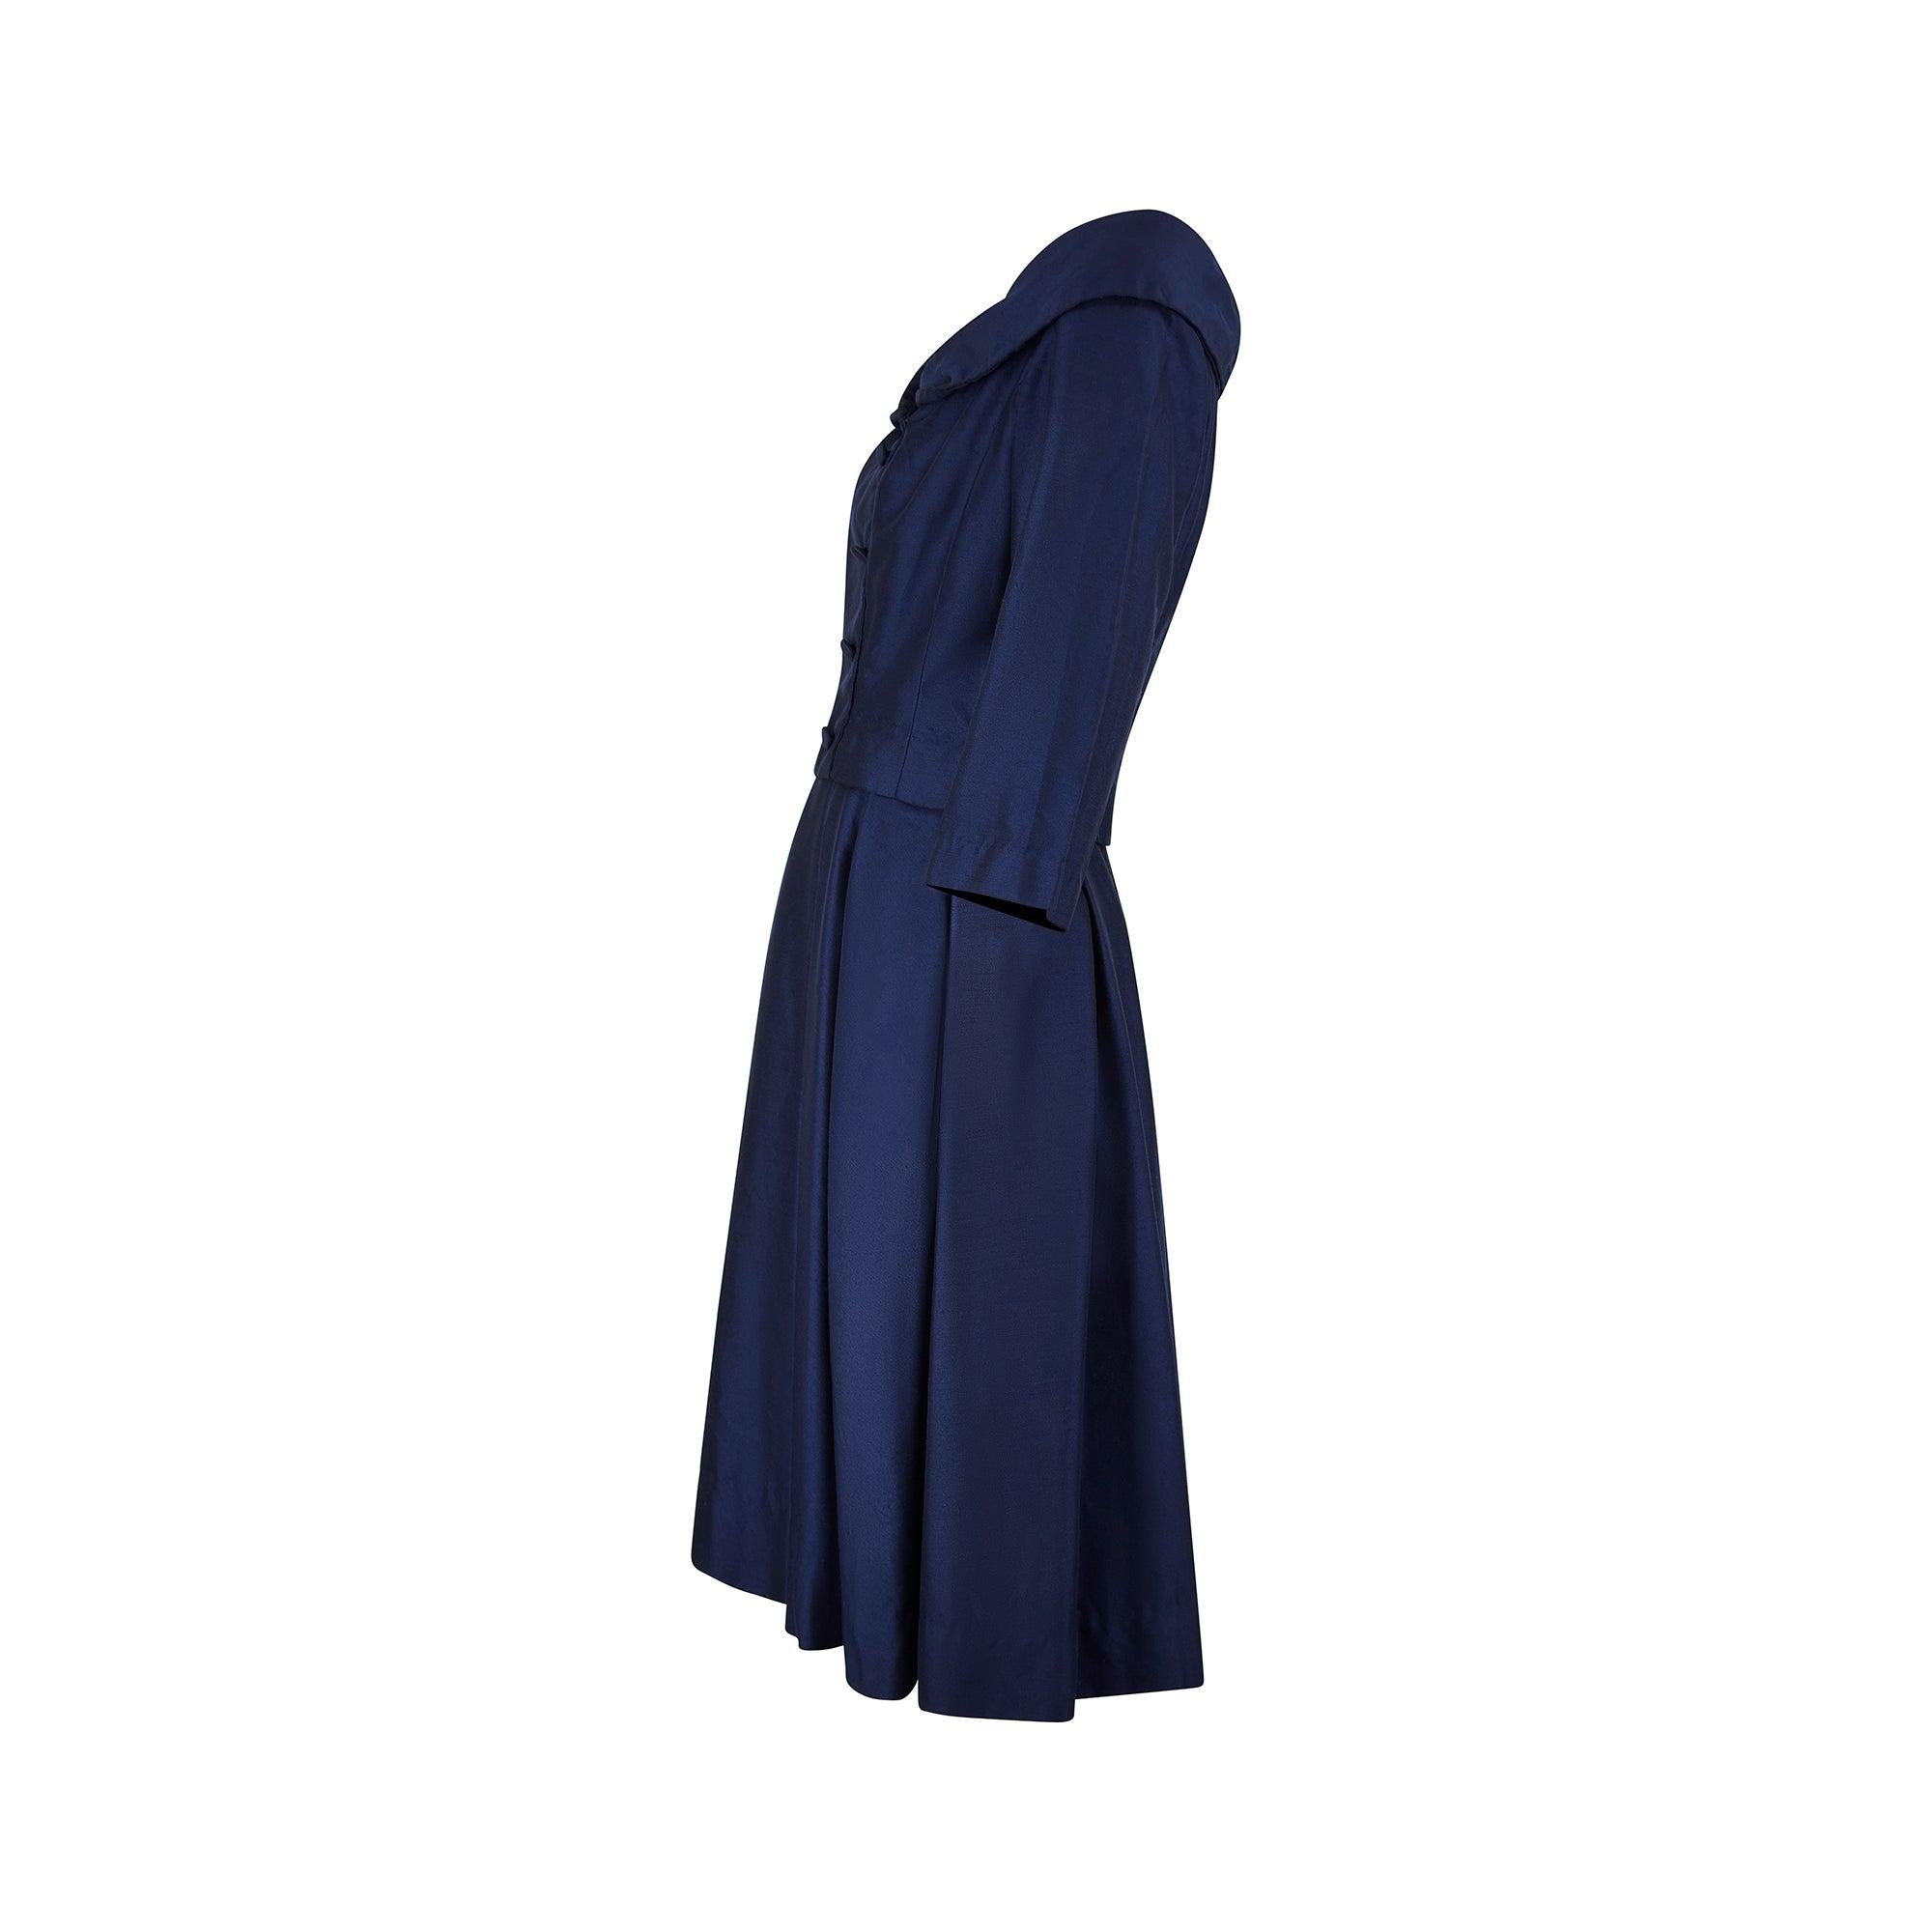 Dieses Kleid ist der Inbegriff von Eleganz. Es wurde in den späten 1950er Jahren für das ikonische Londoner Kaufhaus Harrods entworfen und erweckt den Anschein eines zweiteiligen Anzugs, der aus einer zweireihigen Jacke und einem Rock besteht, ist